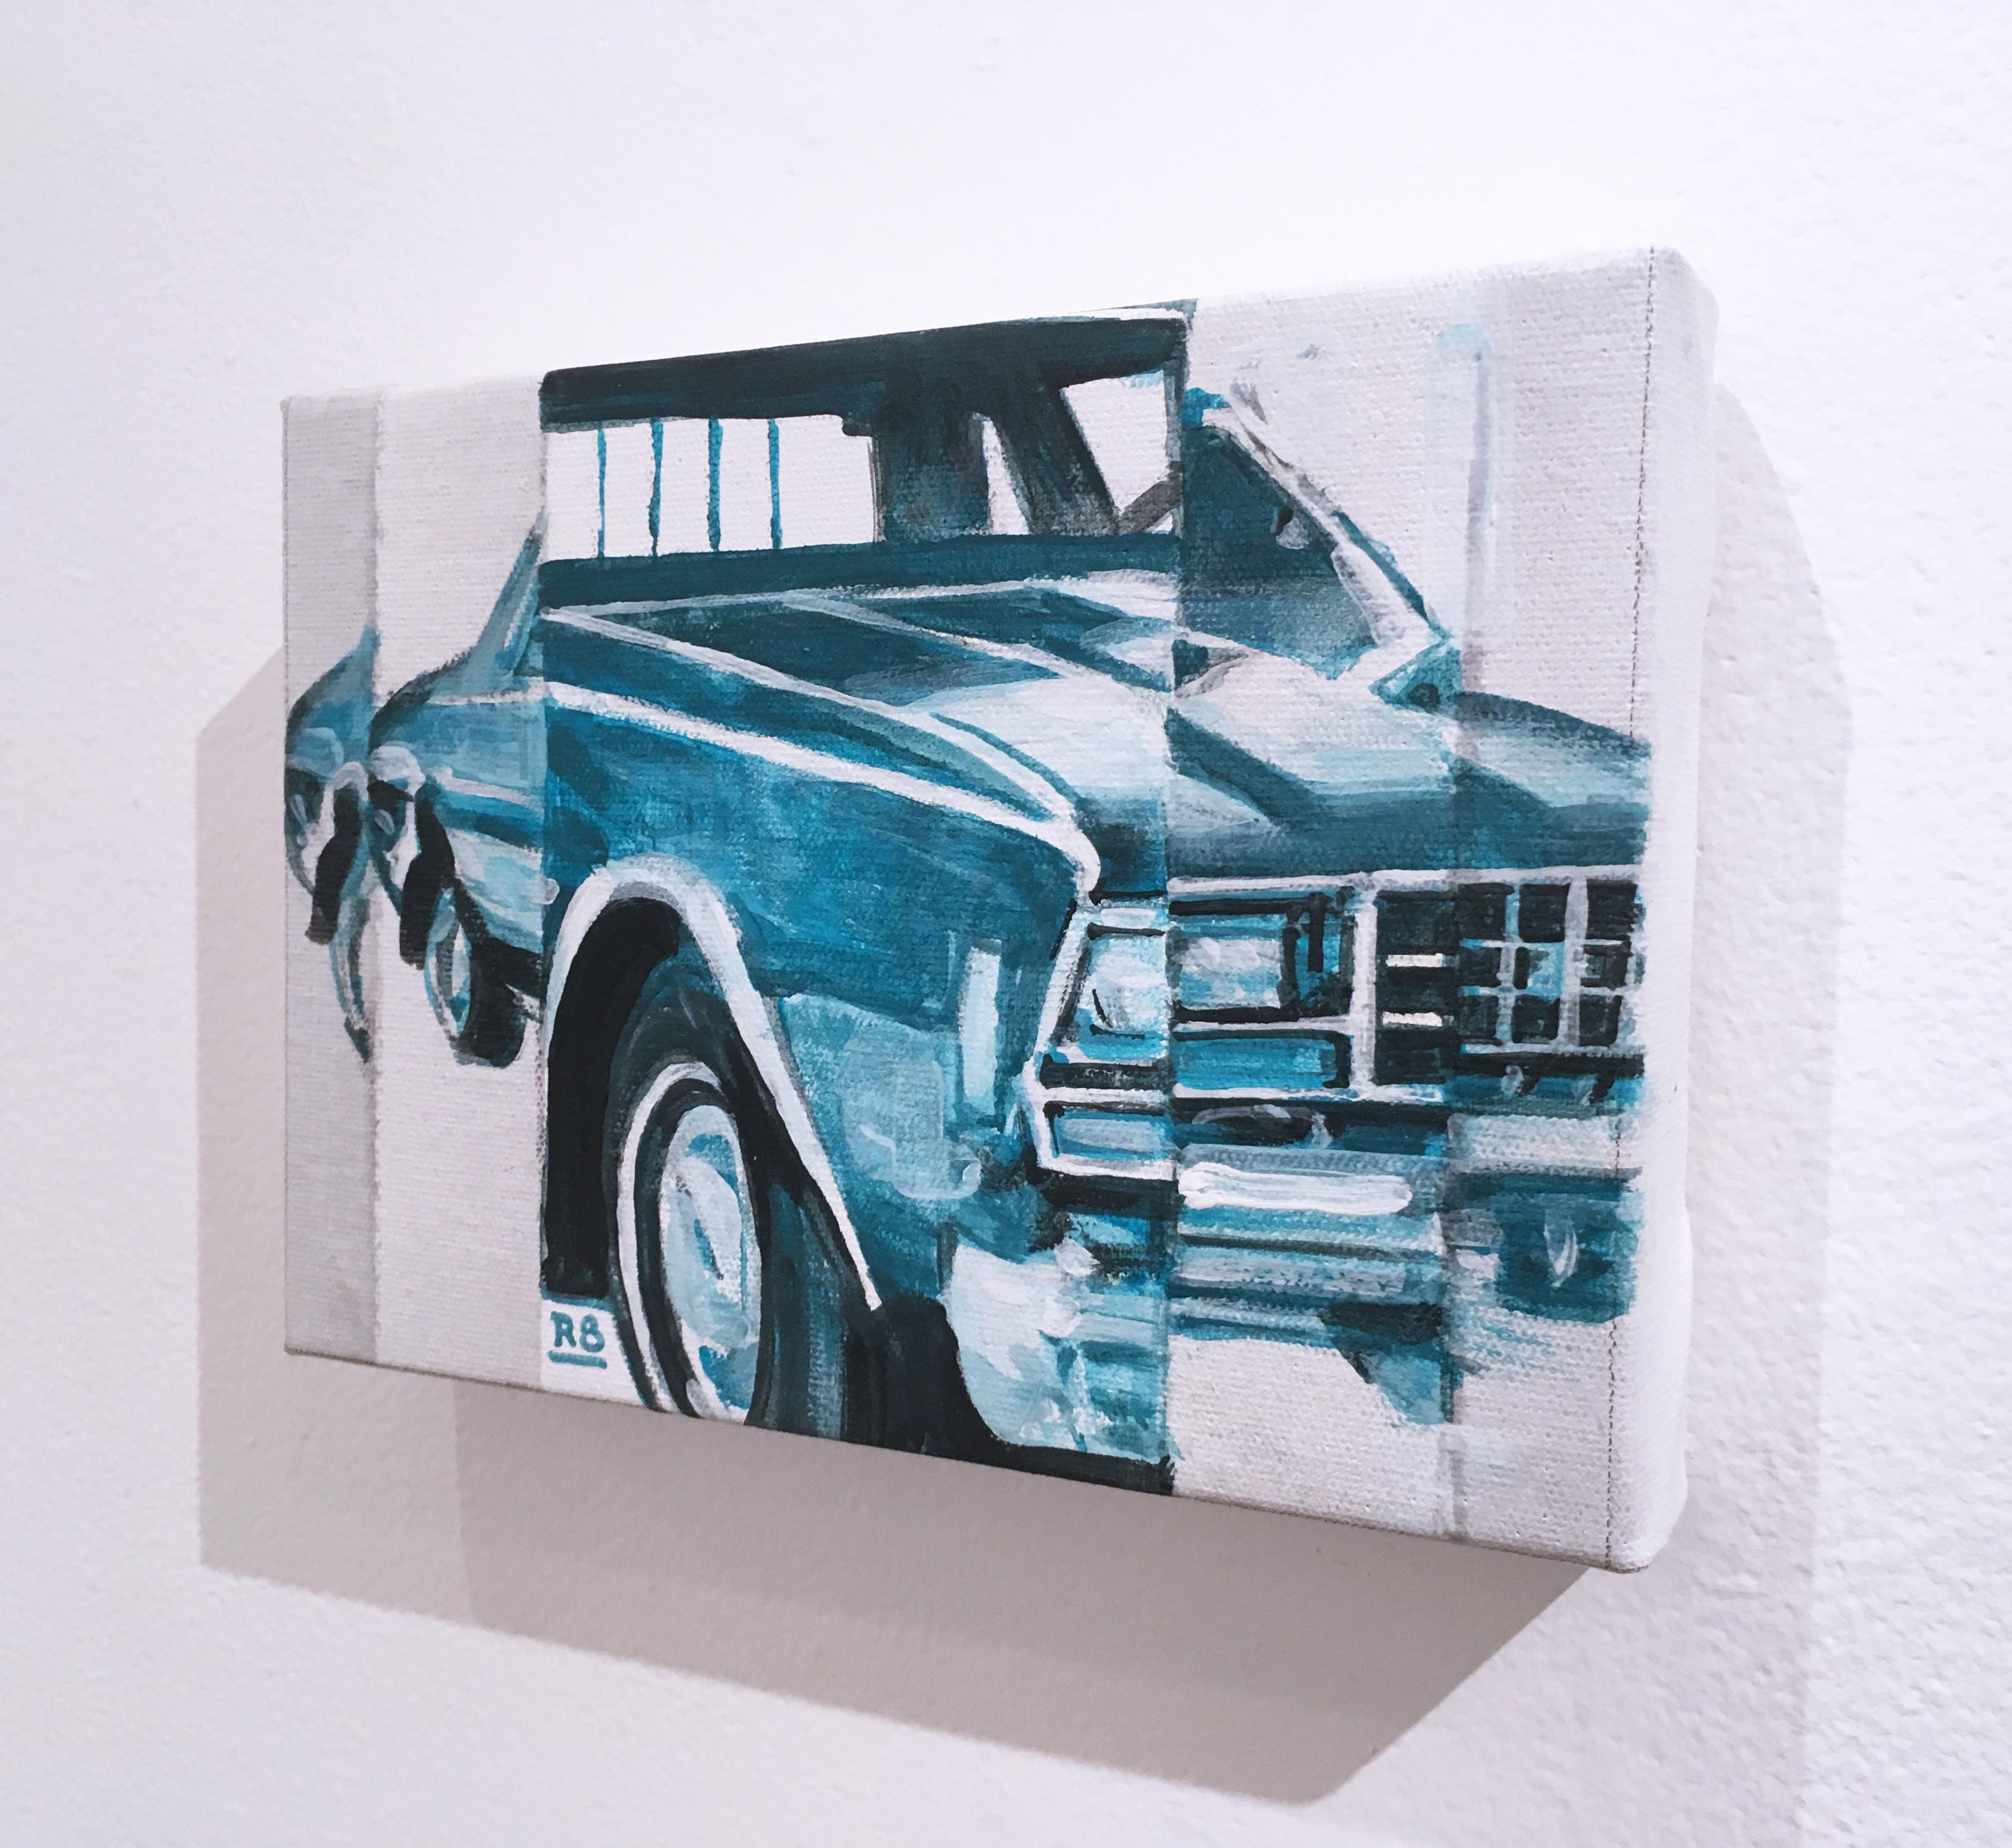 IMPALA, figuratif, acrylique sur toile, turquoise, voiture à muscade Chevy des années 1970  - Painting de RU8ICON1